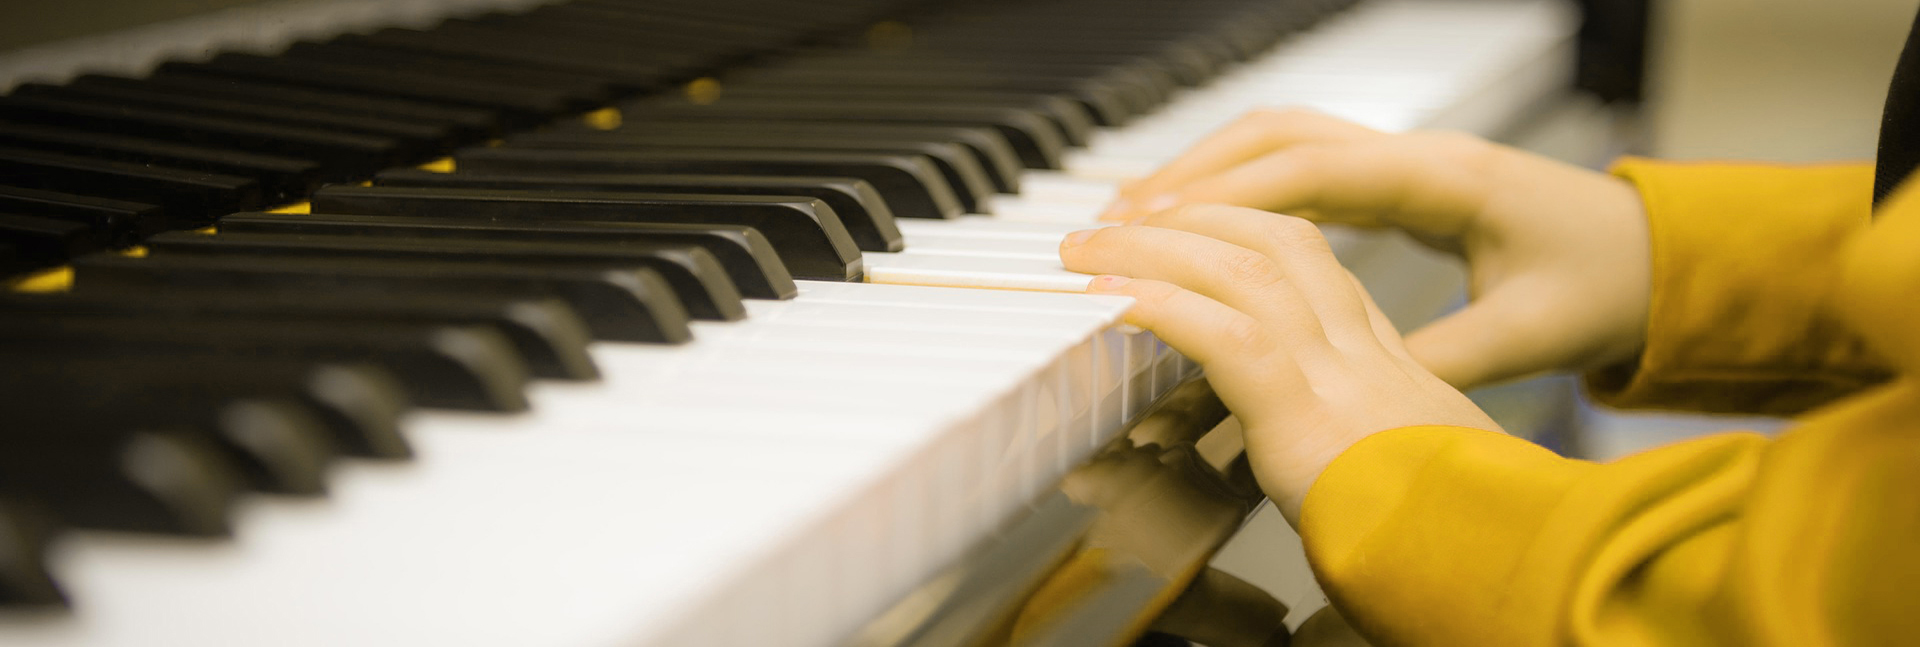 Hände einer Person mit gelbem Pullover am Klavier